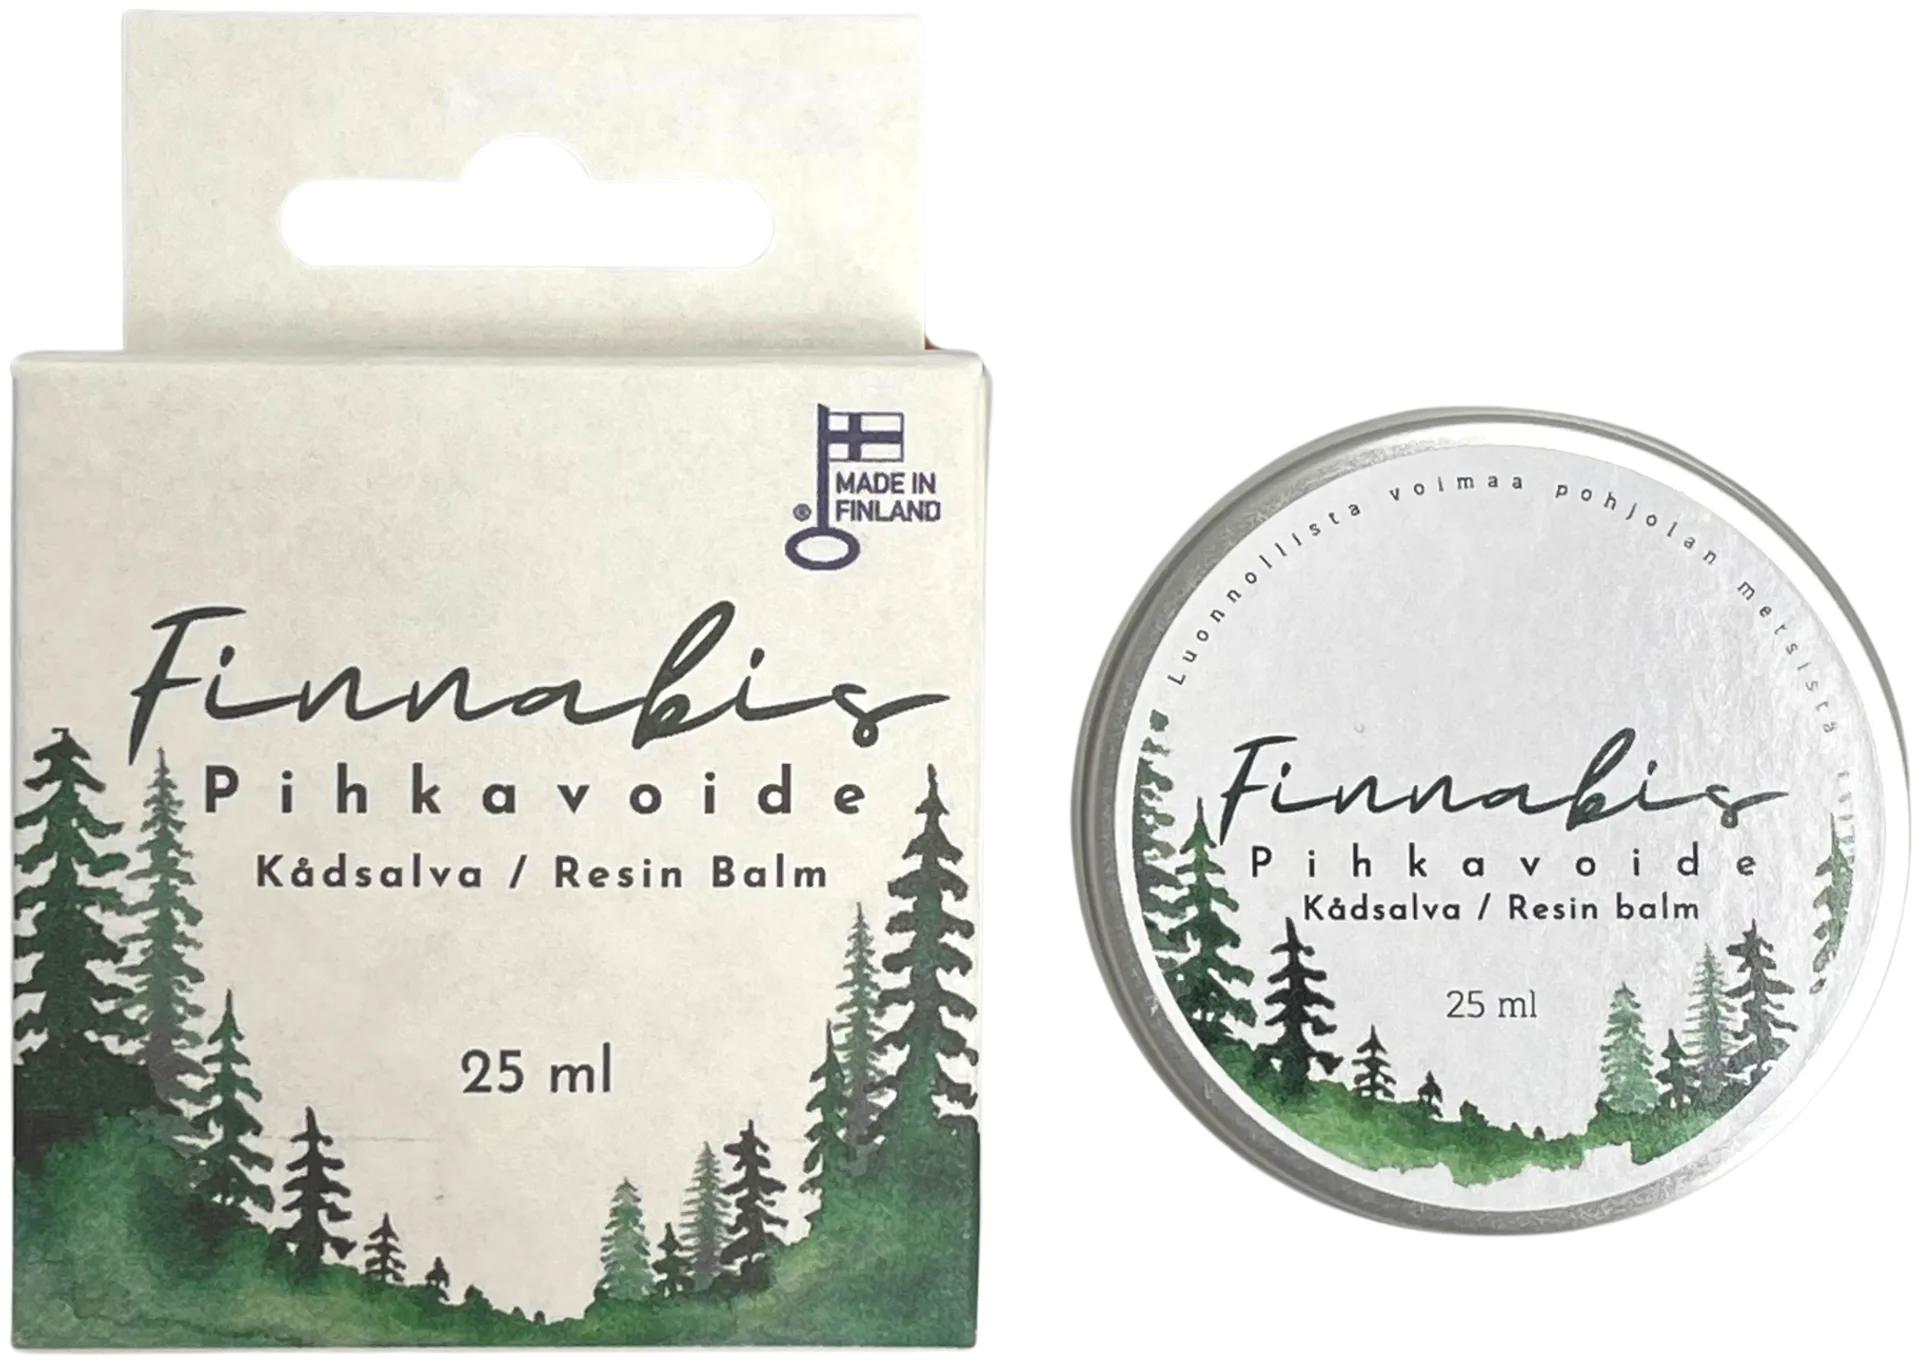 Finnabis Pihkavoide 25 ml - 5